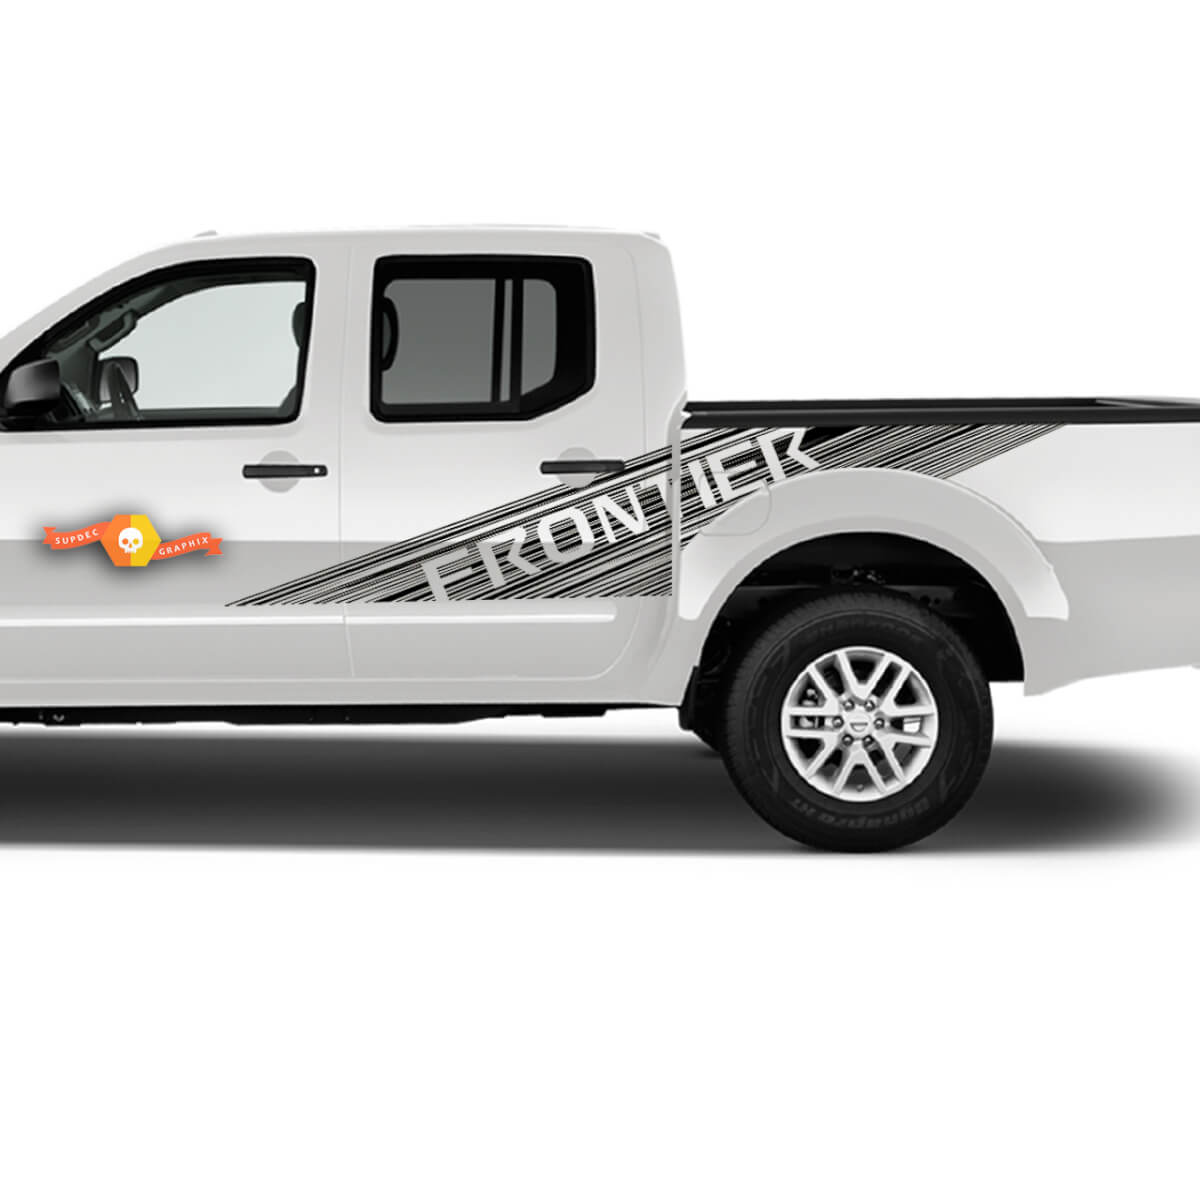 2X Nissan Frontier Doors Bed Grunge Truck Car Vinyl Both Side Stickers Decals Graphics